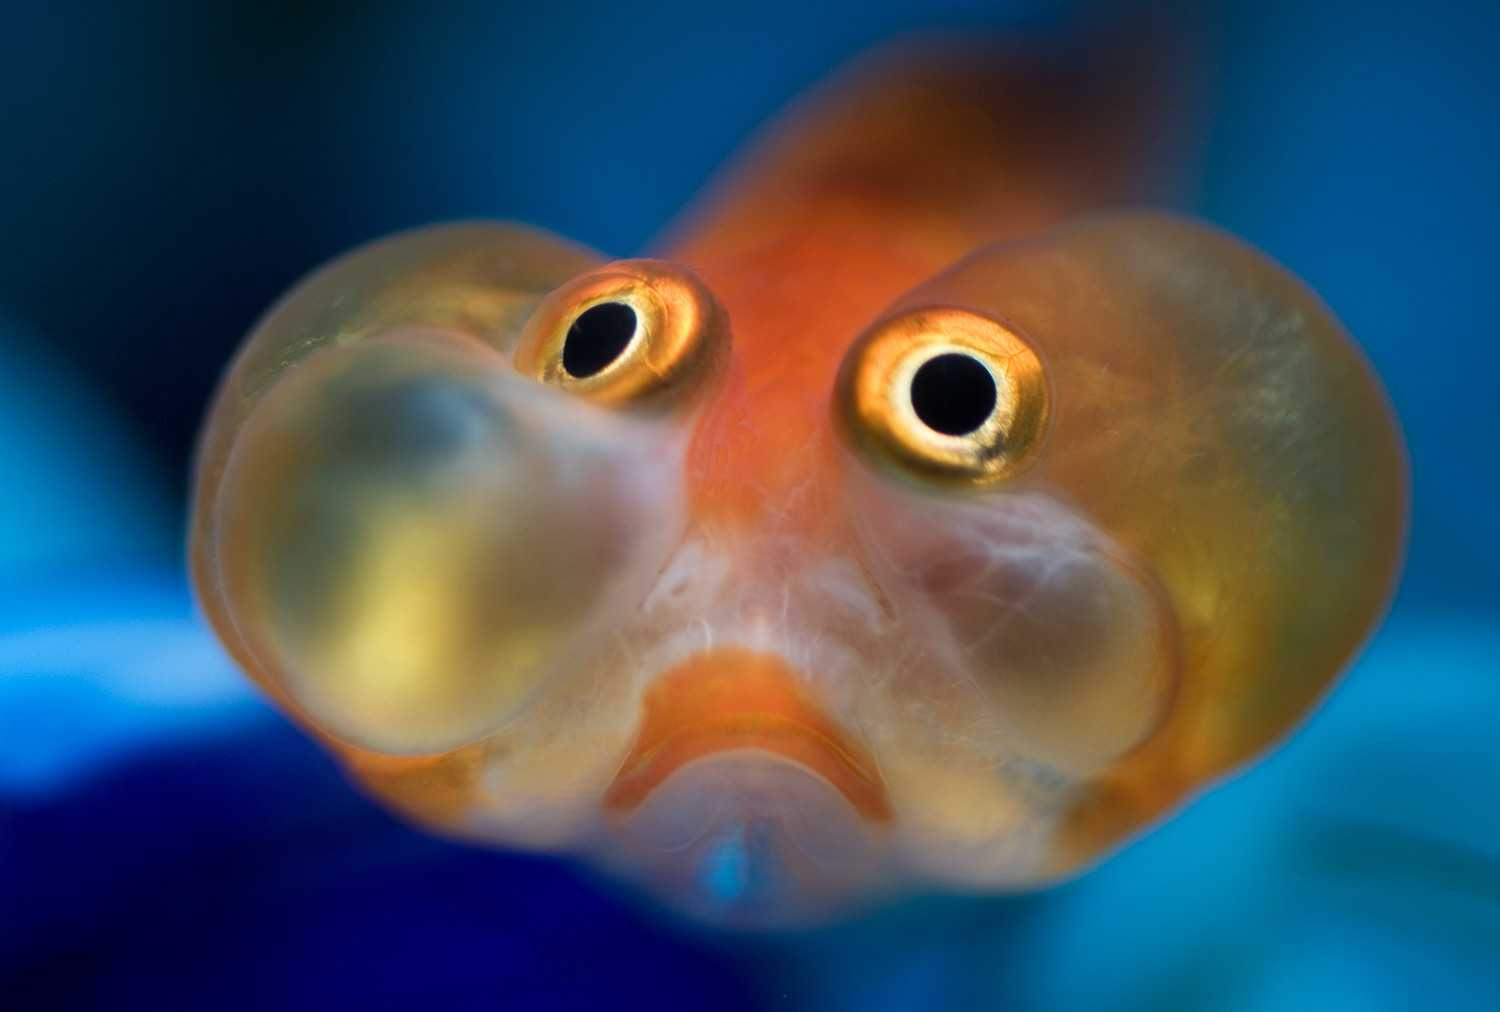 Рыба смешная картинка. Аквариумная рыбка телескоп Звездочет. Звездочет рыбка аквариумная. Золотая рыбка Звездочет. Золотая рыбка пузыреглаз.